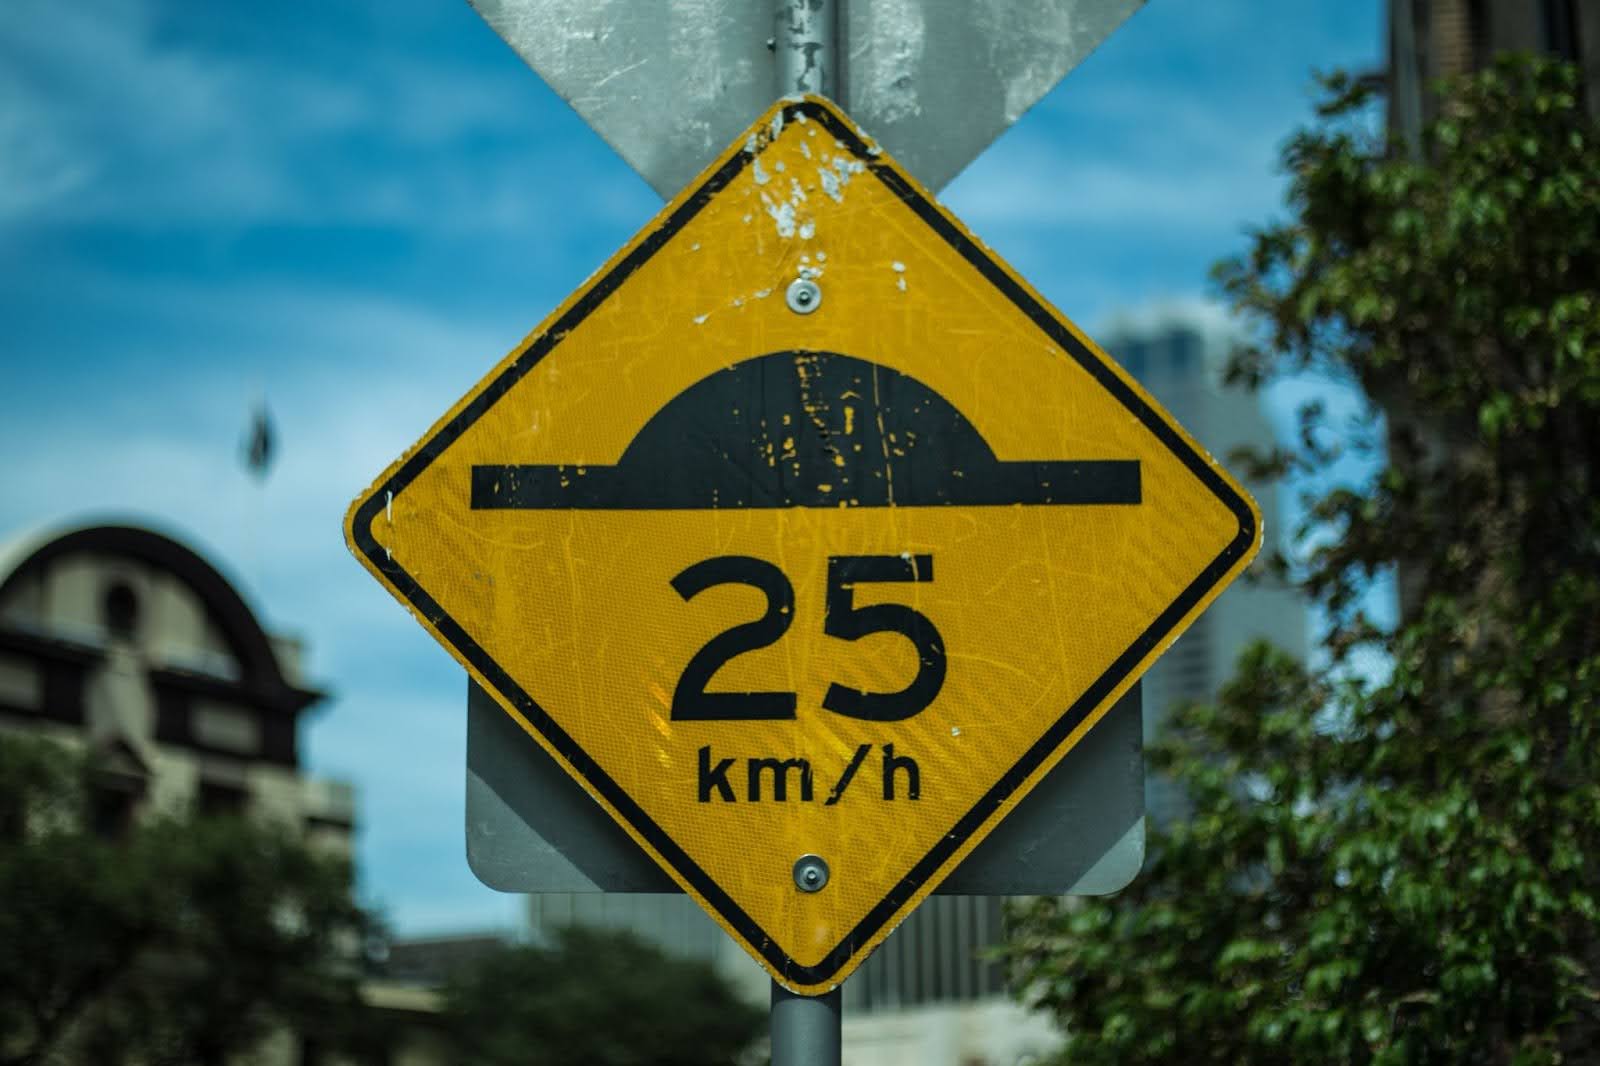 Placa losangular amarela sinalizando 25 km/h como o limite de velocidade permitida.